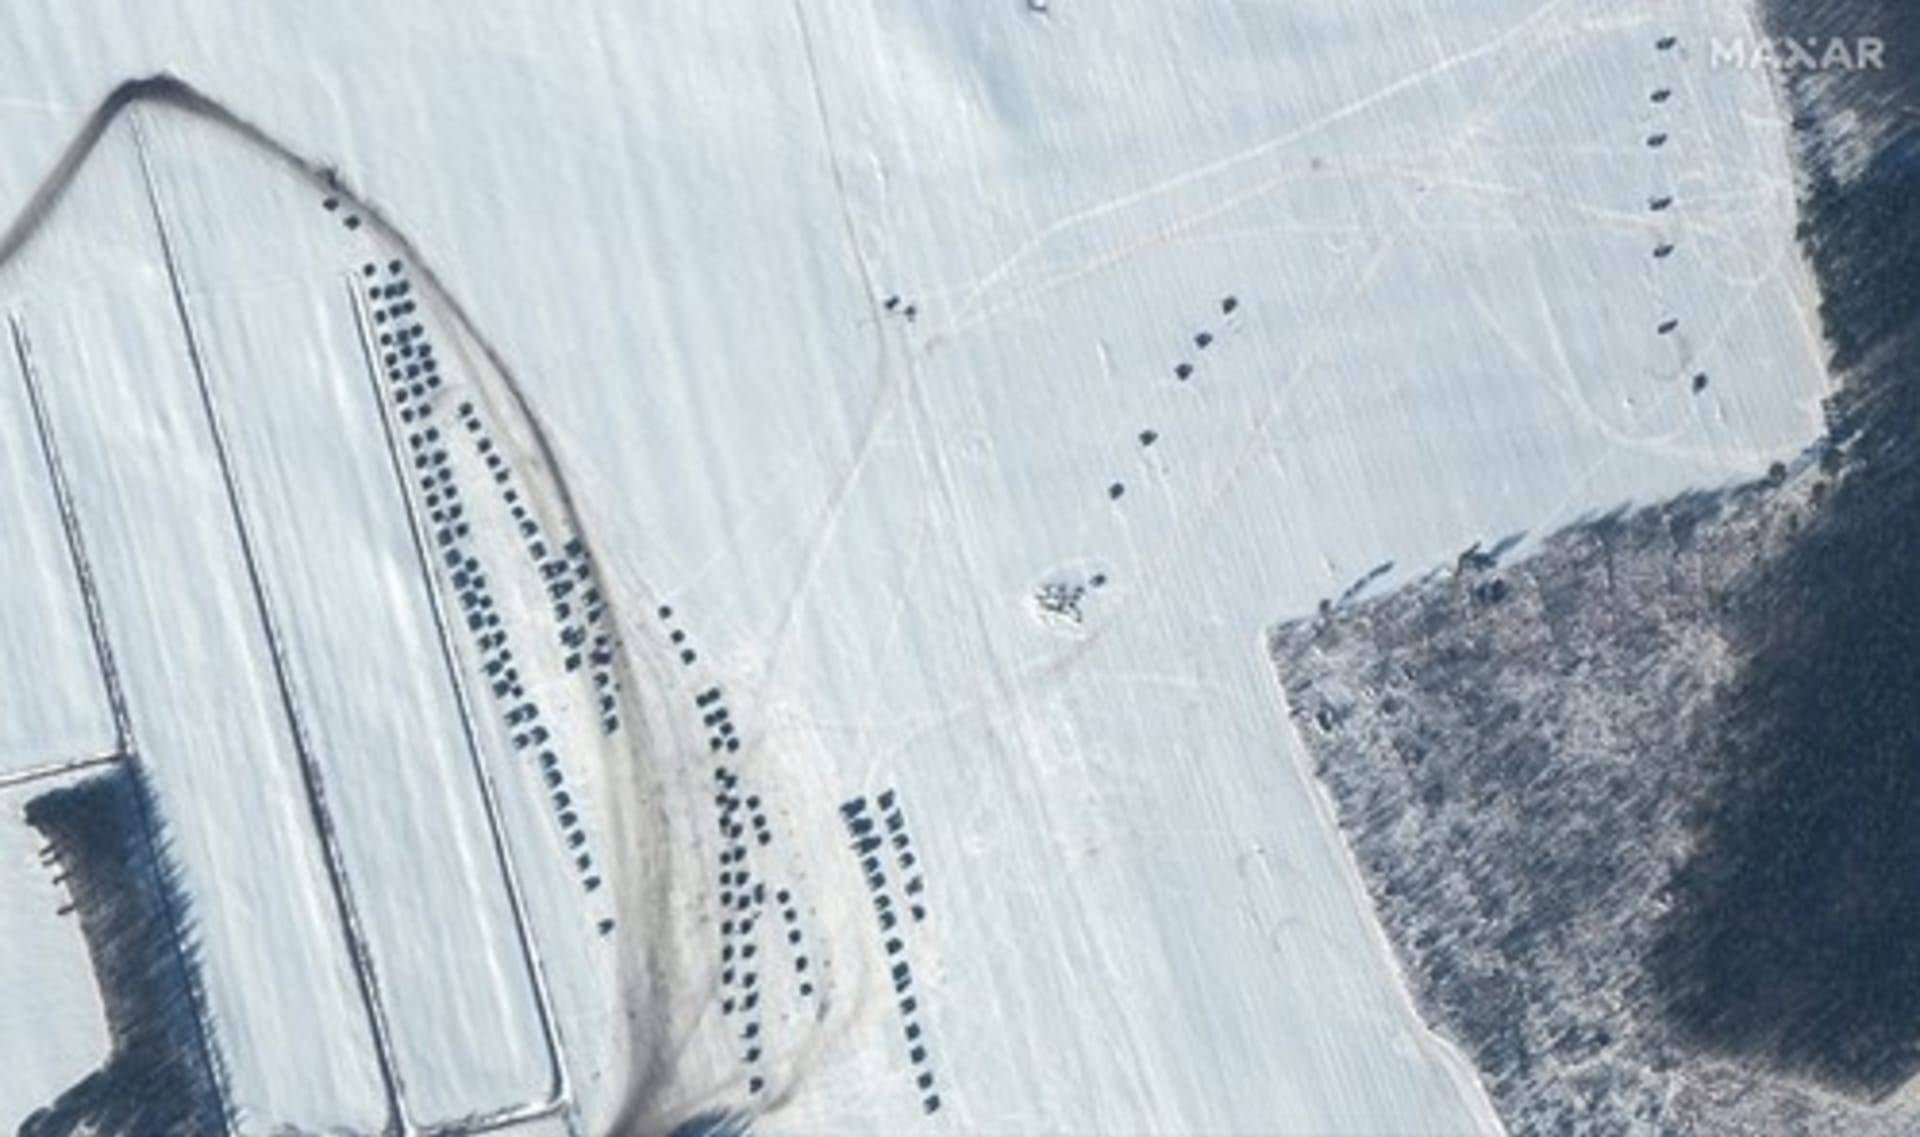 Satelitní snímky společnosti Maxar Technologies pořízené 4. února ukazují bojové jednotky a rozmístěná děla u běloruského města Rečyca